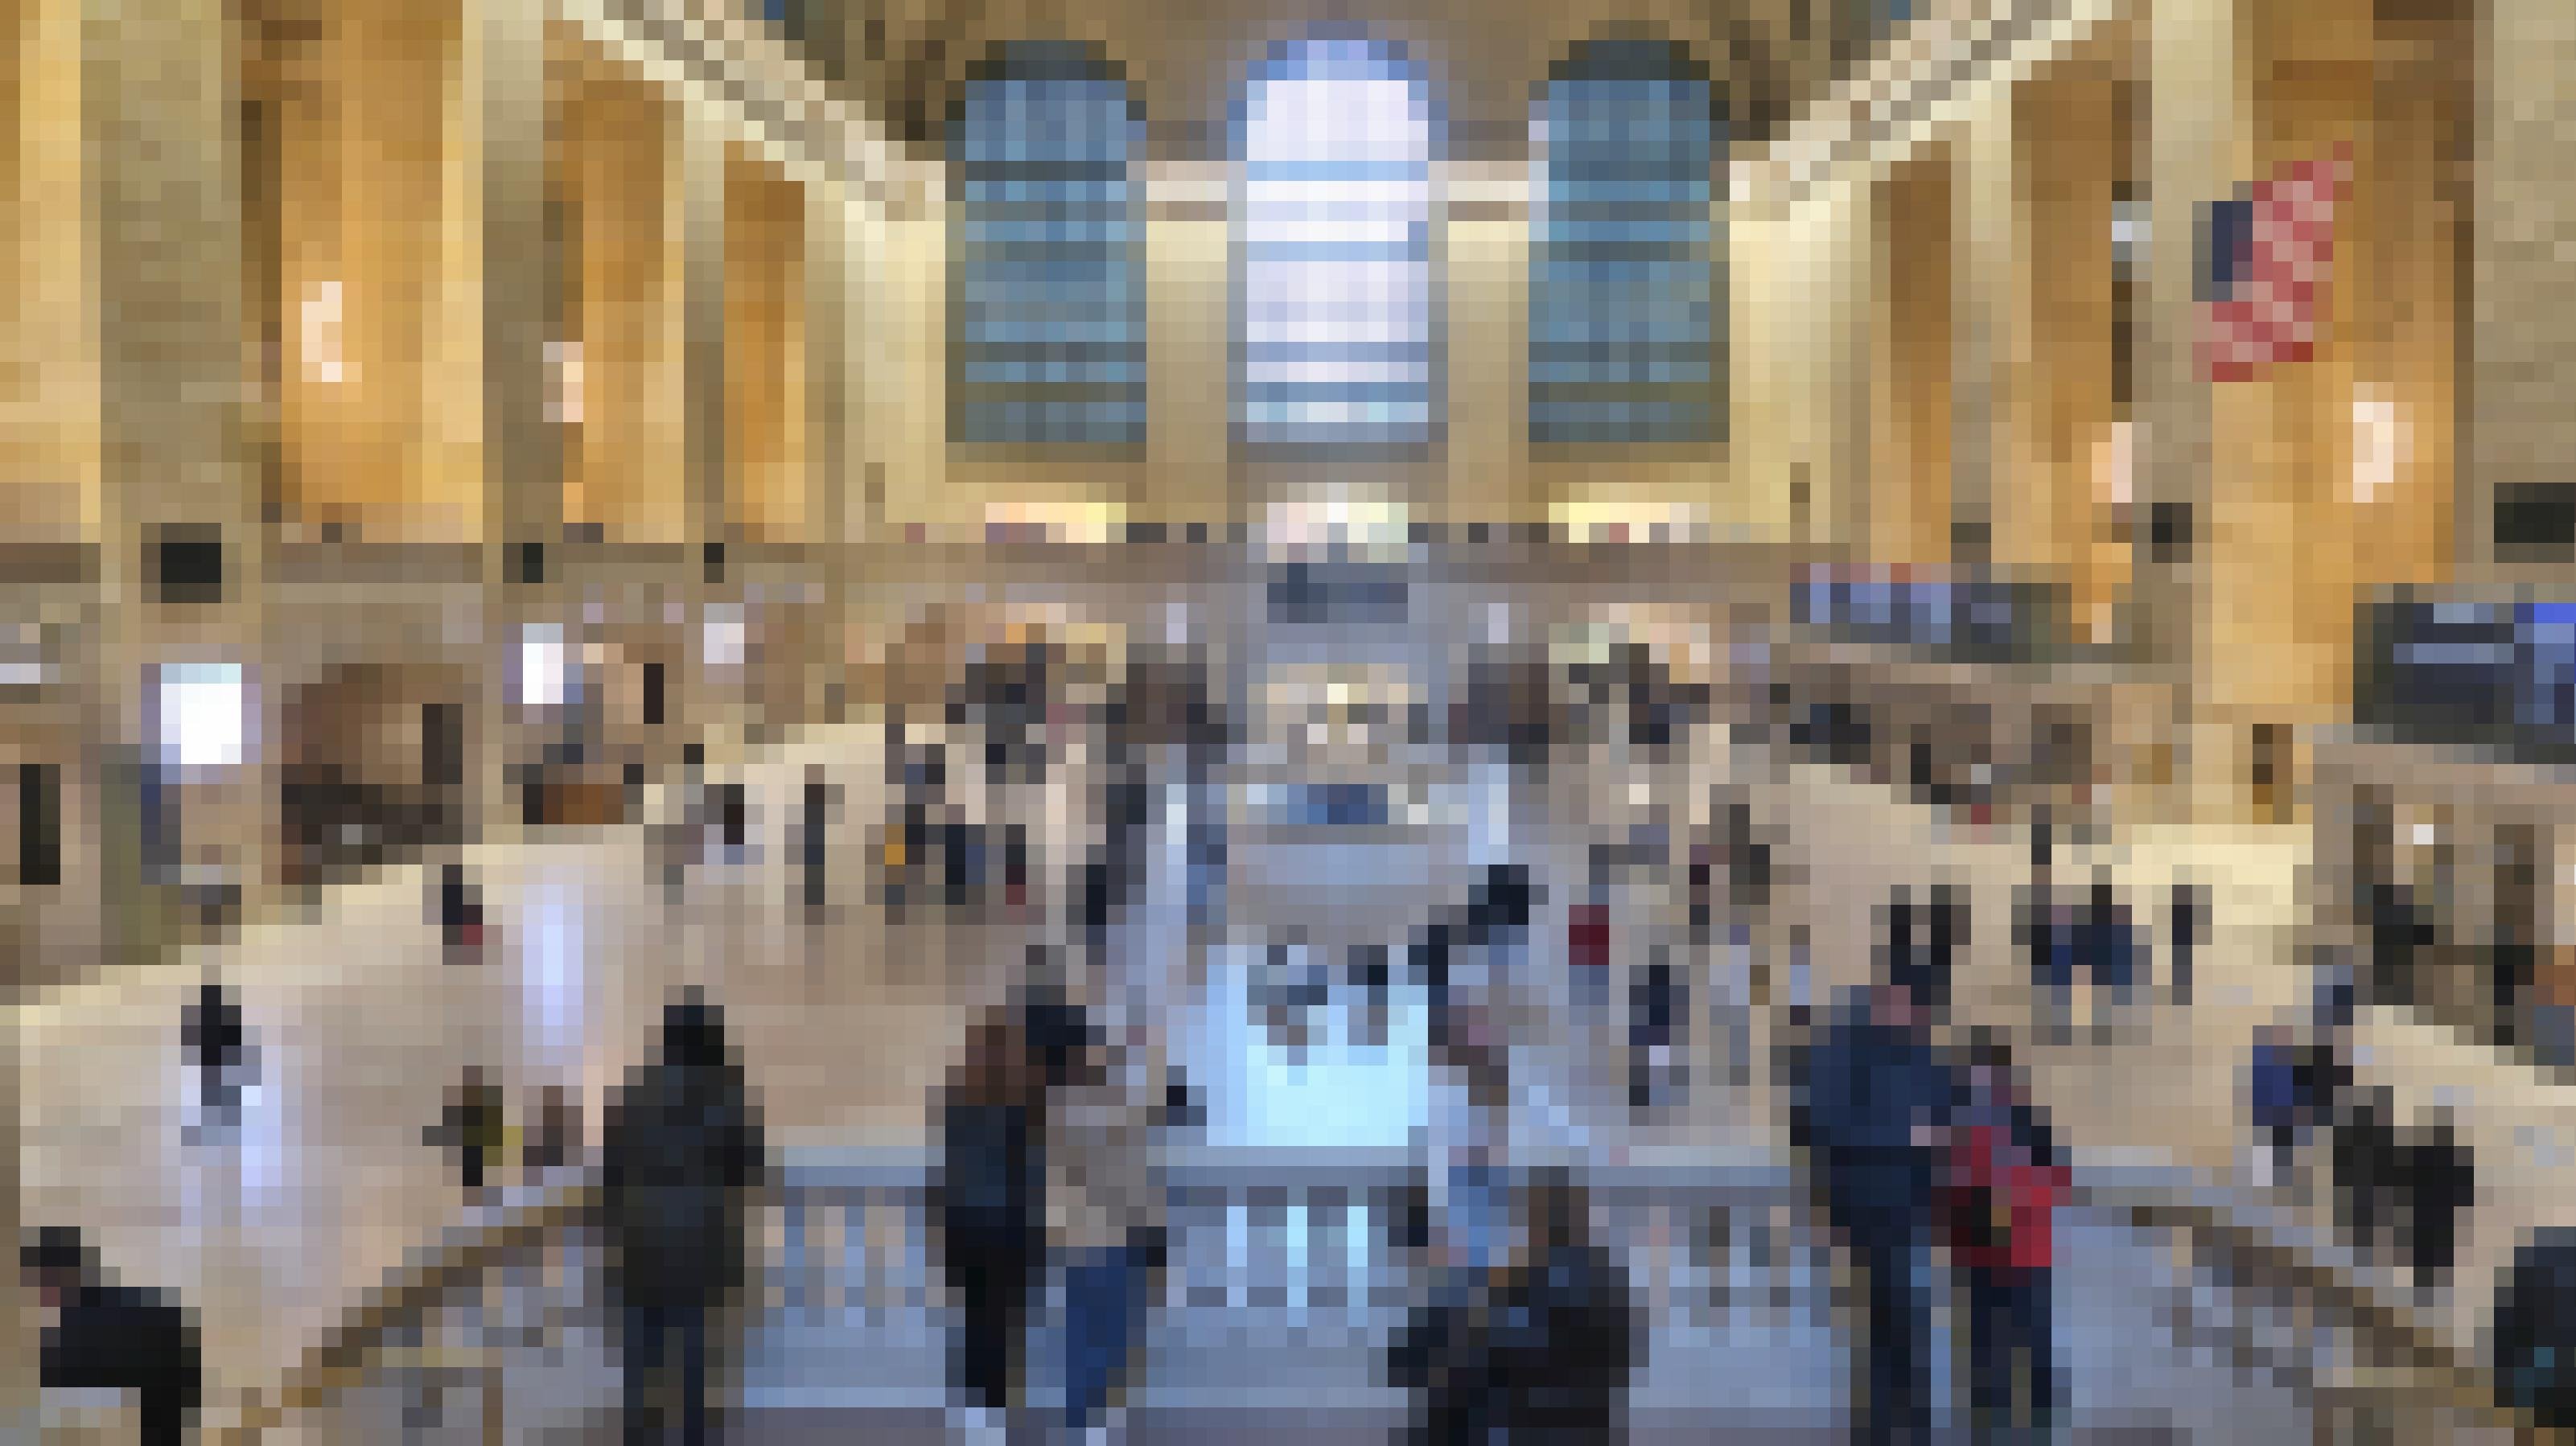 Bahnhofhalle in der Grand Central Station. Tourist:innen fotografieren sich.